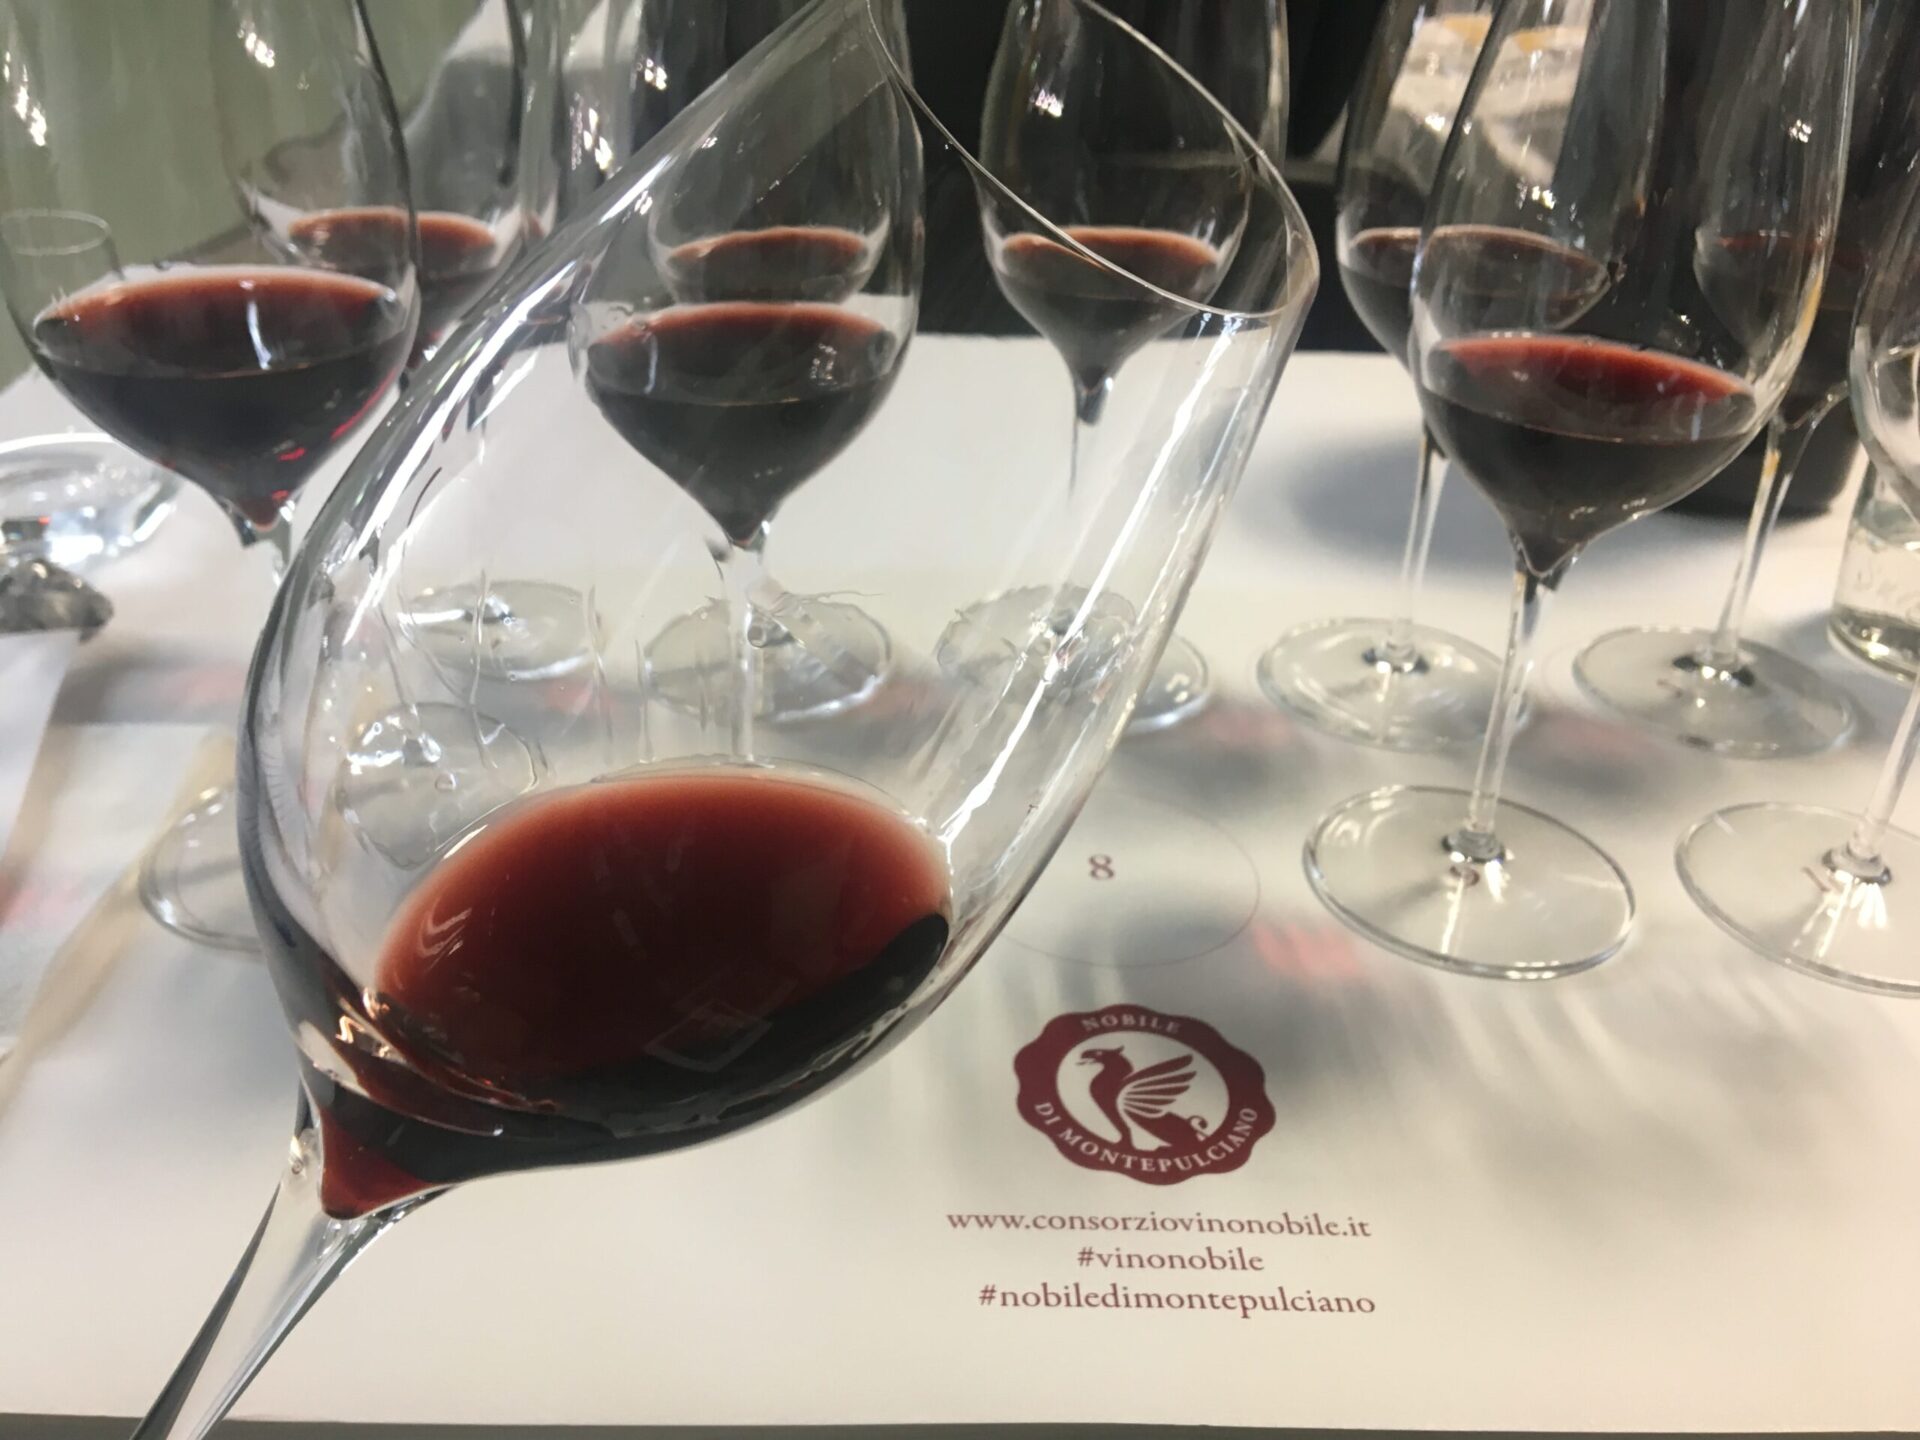 L’elogio del Sangiovese. A Vinitaly trent’anni di Vino Nobile di Montepulciano